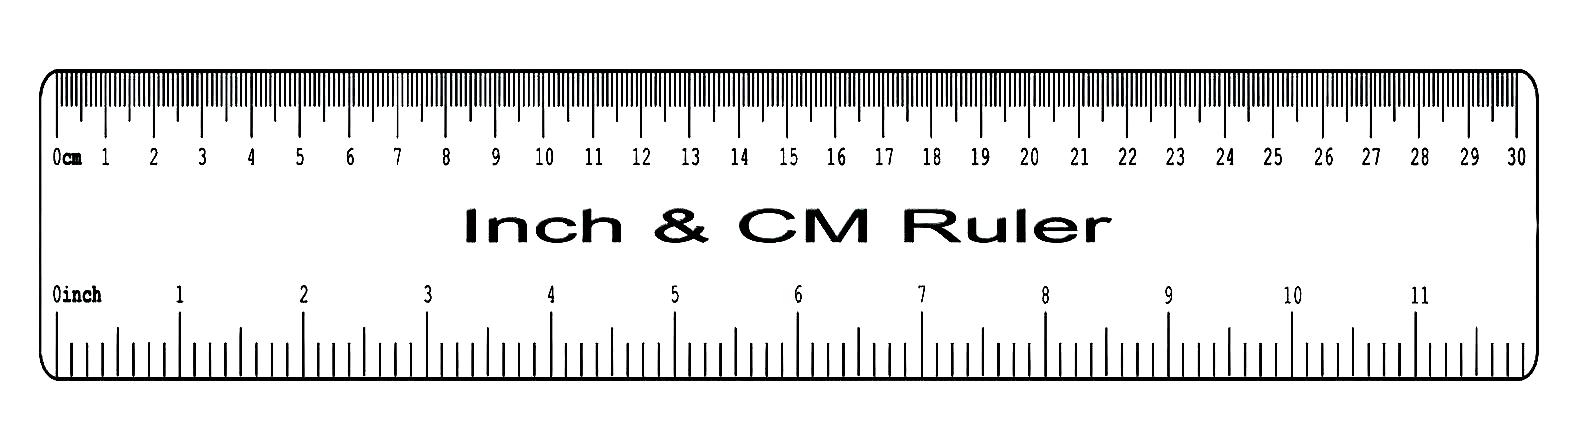 ruler online life sized ruler millimeters